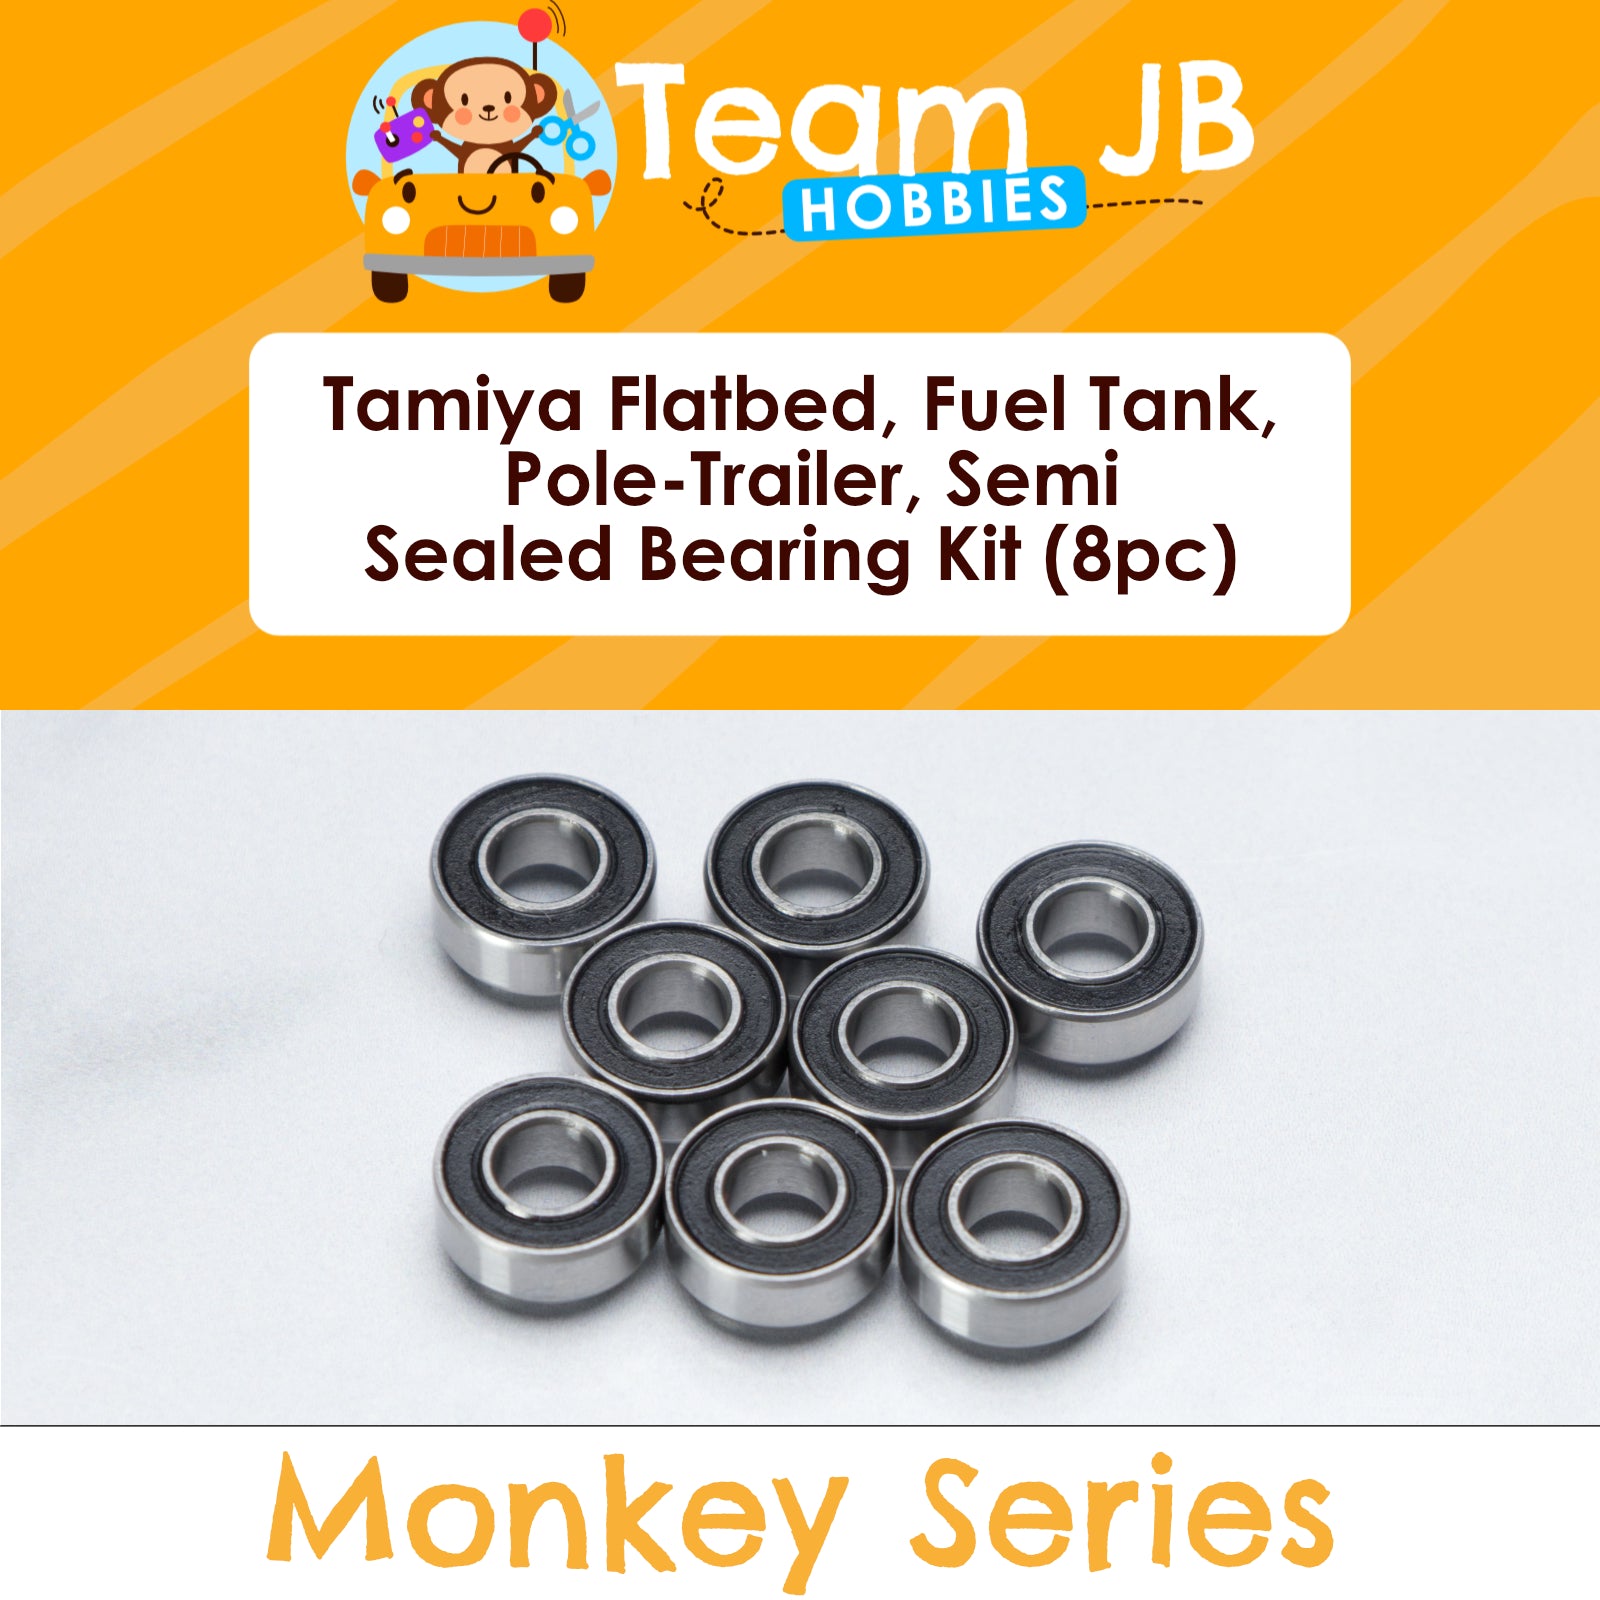 Tamiya Flatbed, Fuel Tank, Pole-Trailer, Semi-Trailer - Sealed Bearing Kit